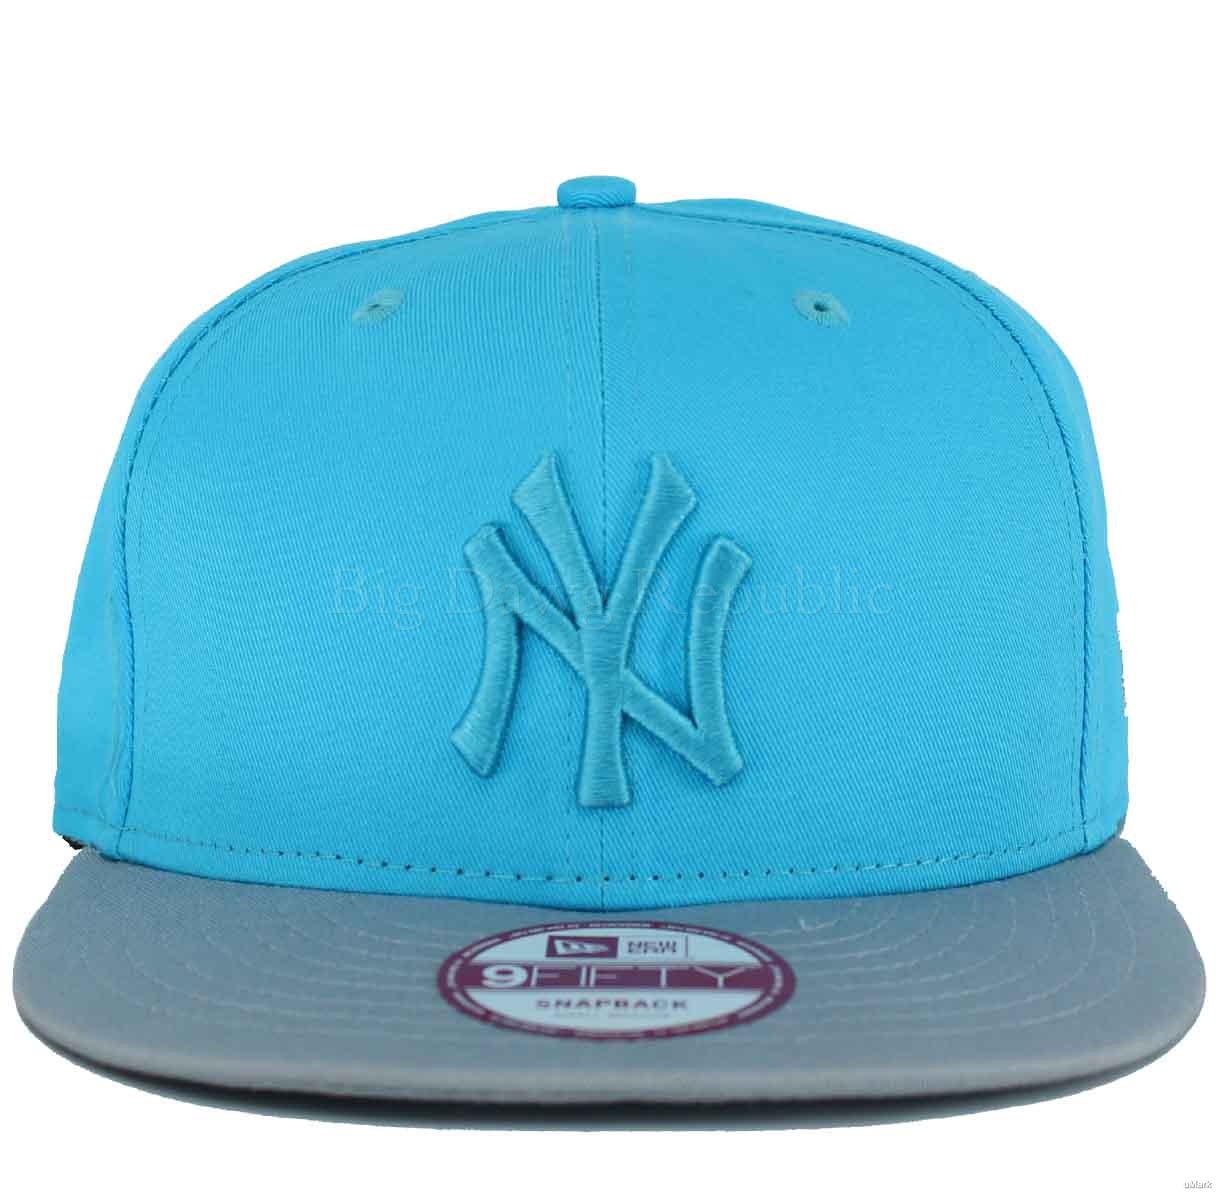 New Era MLB 9Fifty NY New York Yankees Turquoise Blue Snapback